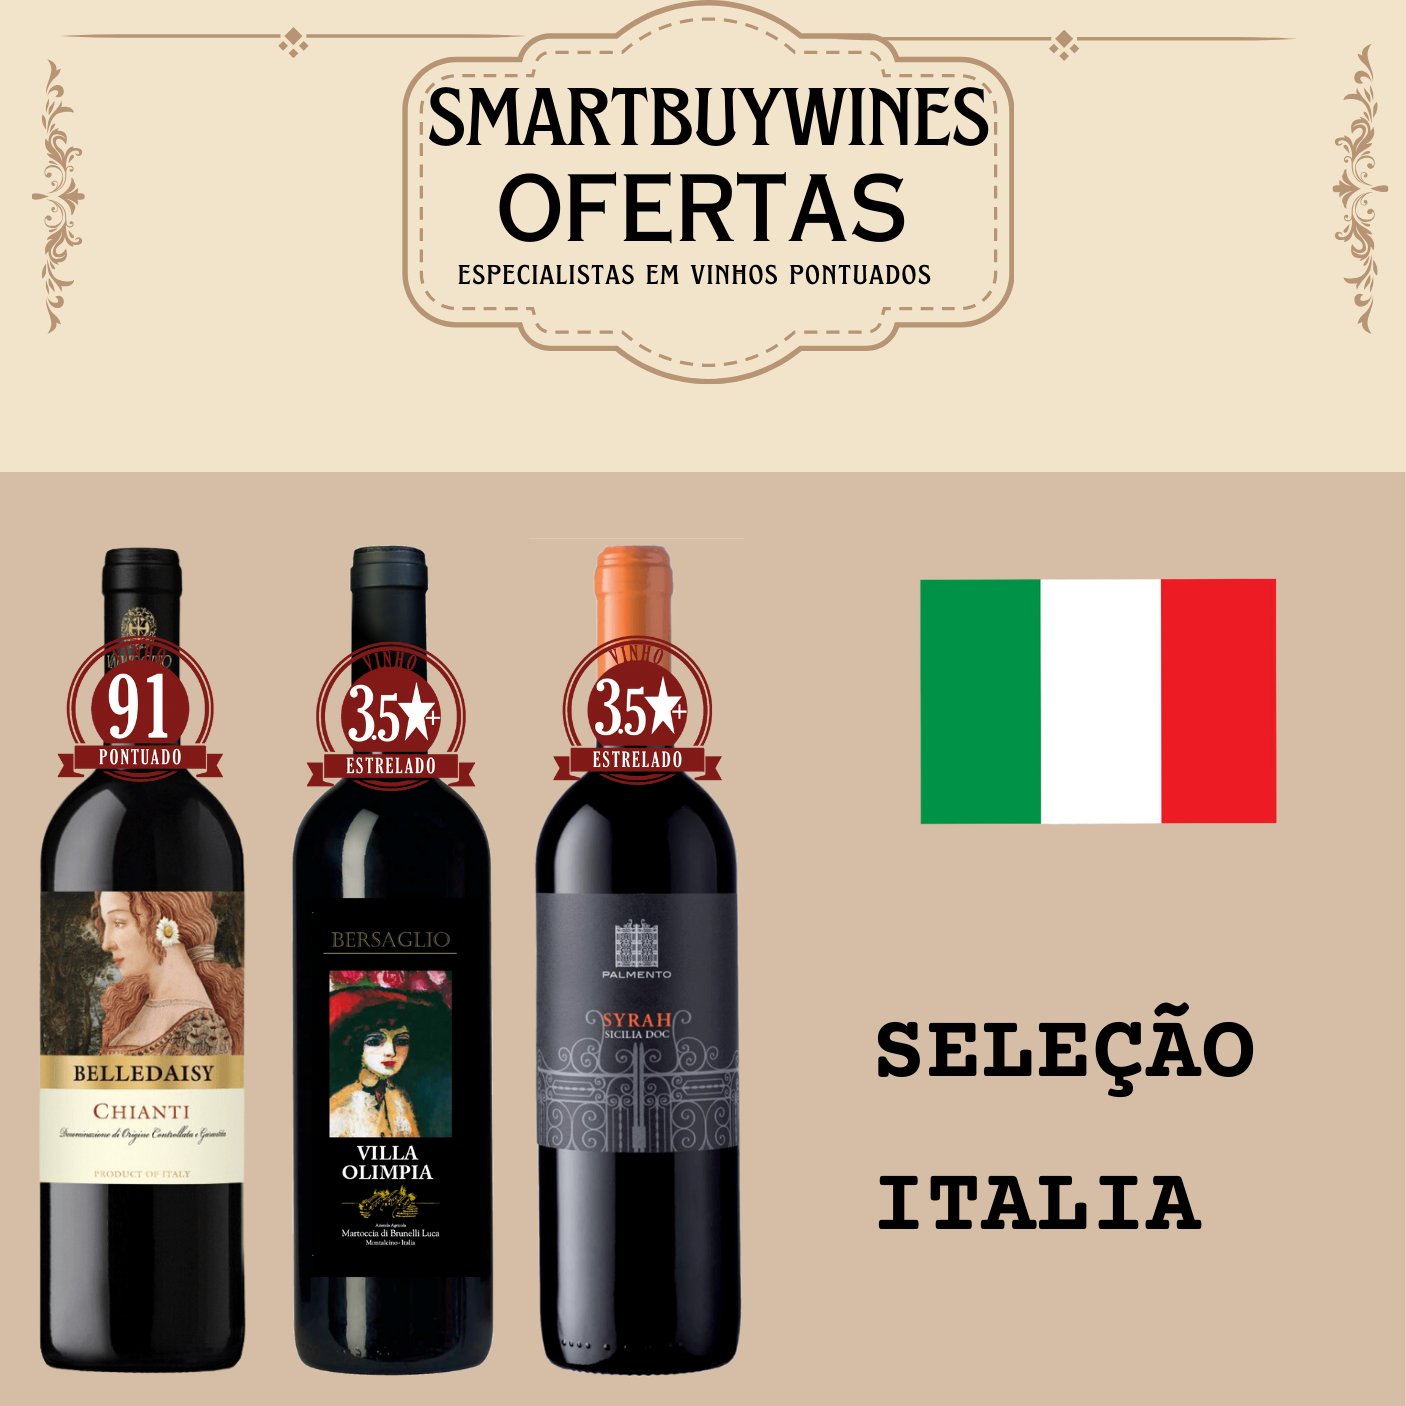 Seleção em oferta - Italia - caixa de 3 vinhos - SmartBuyWines.com.br